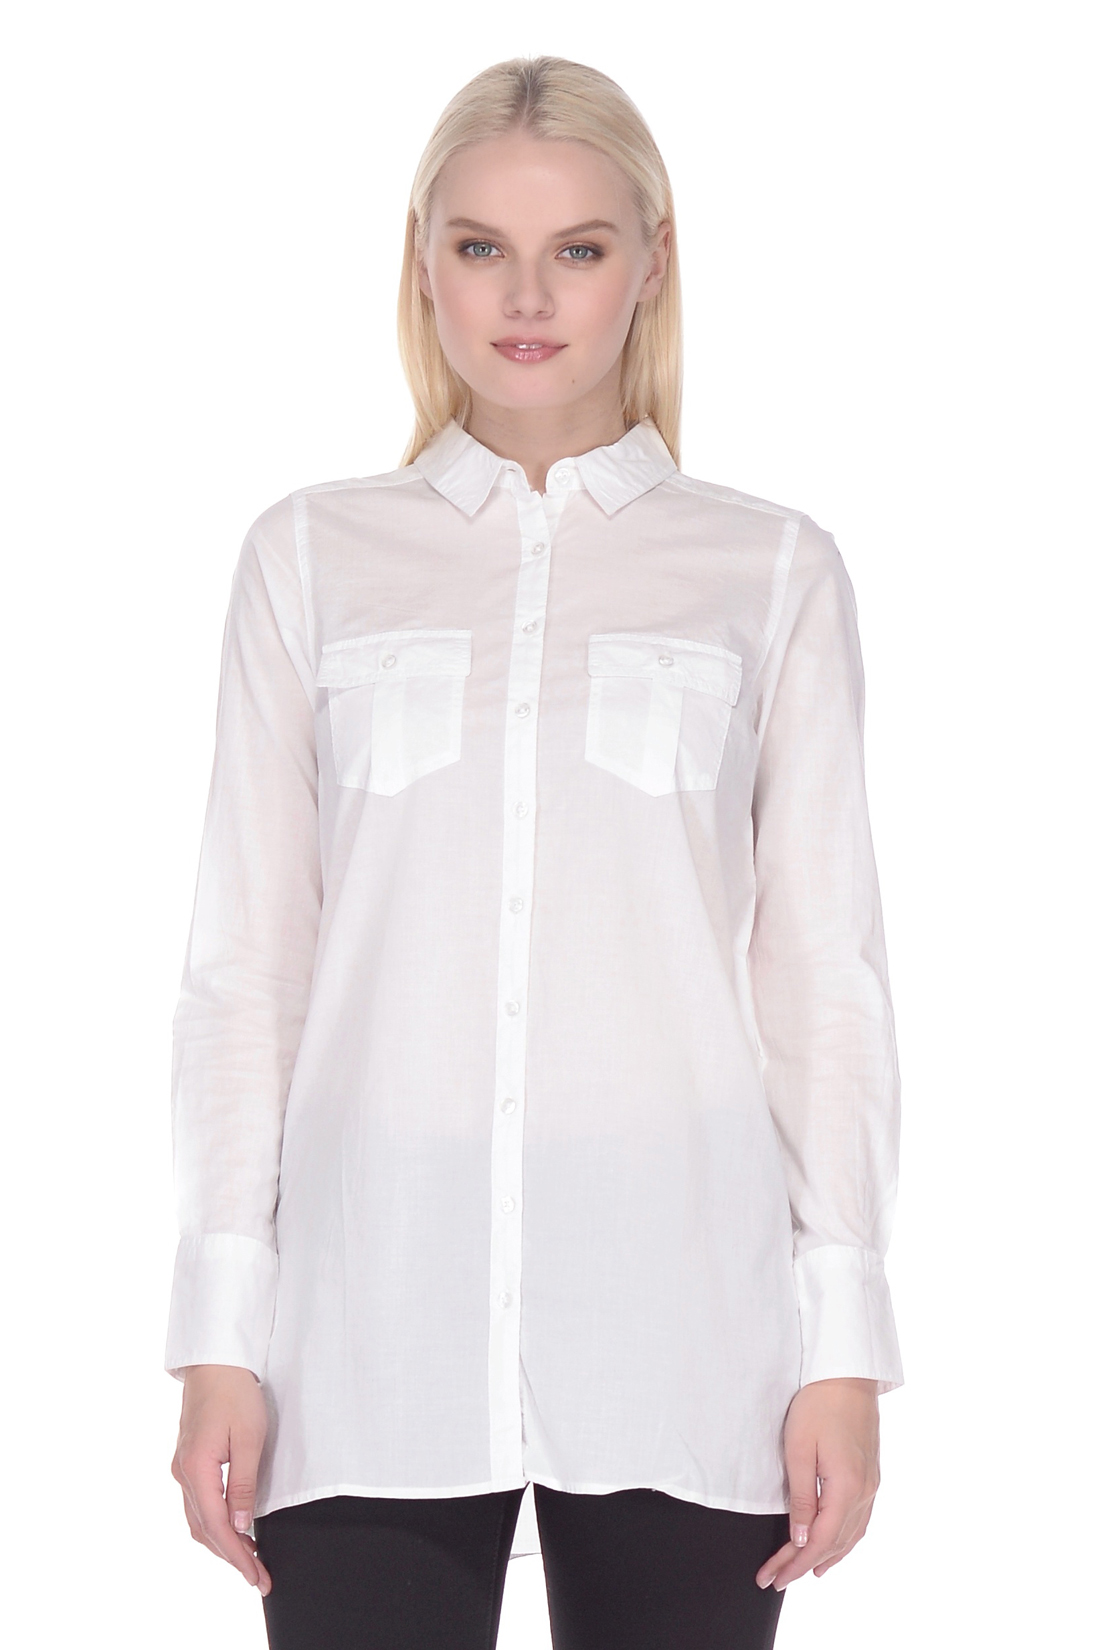 Удлинённая рубашка из хлопка (арт. baon B178055), размер XS, цвет белый Удлинённая рубашка из хлопка (арт. baon B178055) - фото 1